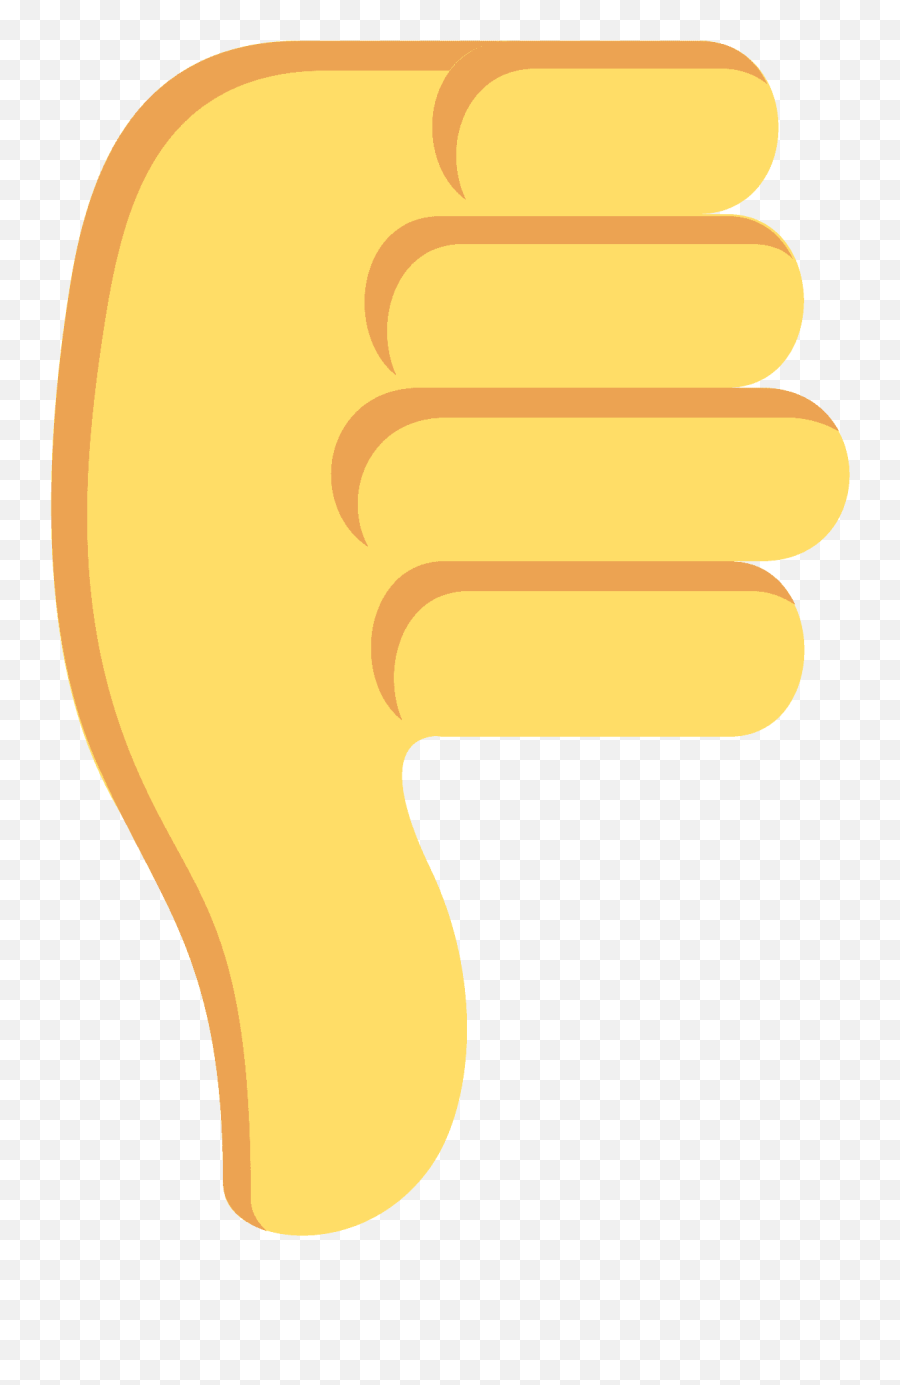 Thumbs Down Emoji - Emoticons Positivo E Negativo,Thumbs Down Icon Emoji